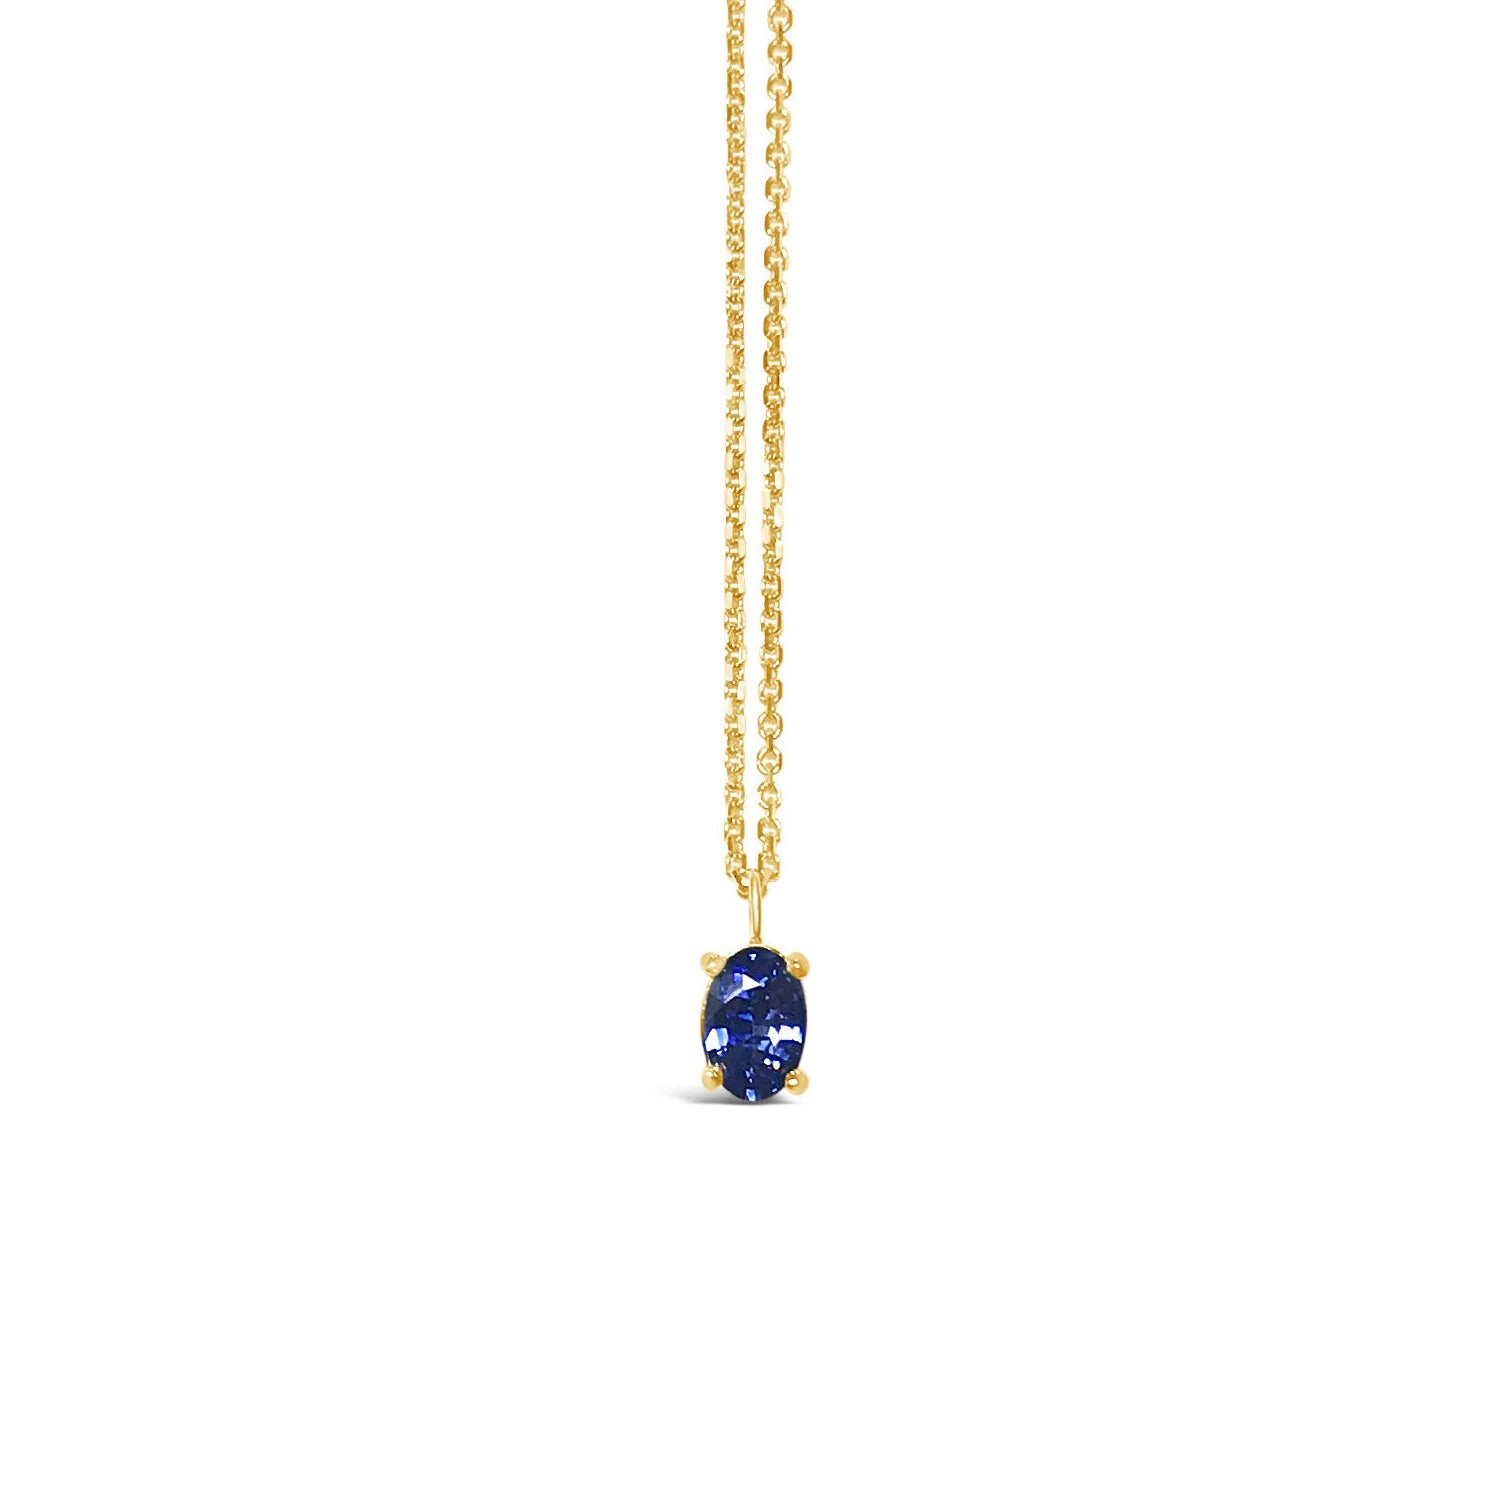 MERLINES || 0.5ct blue sapphire necklace in yellow gold 14k - LOFT.bijoux || Custom jewelry & wedding rings / Bijoux sur mesure & bagues de mariage || Montreal